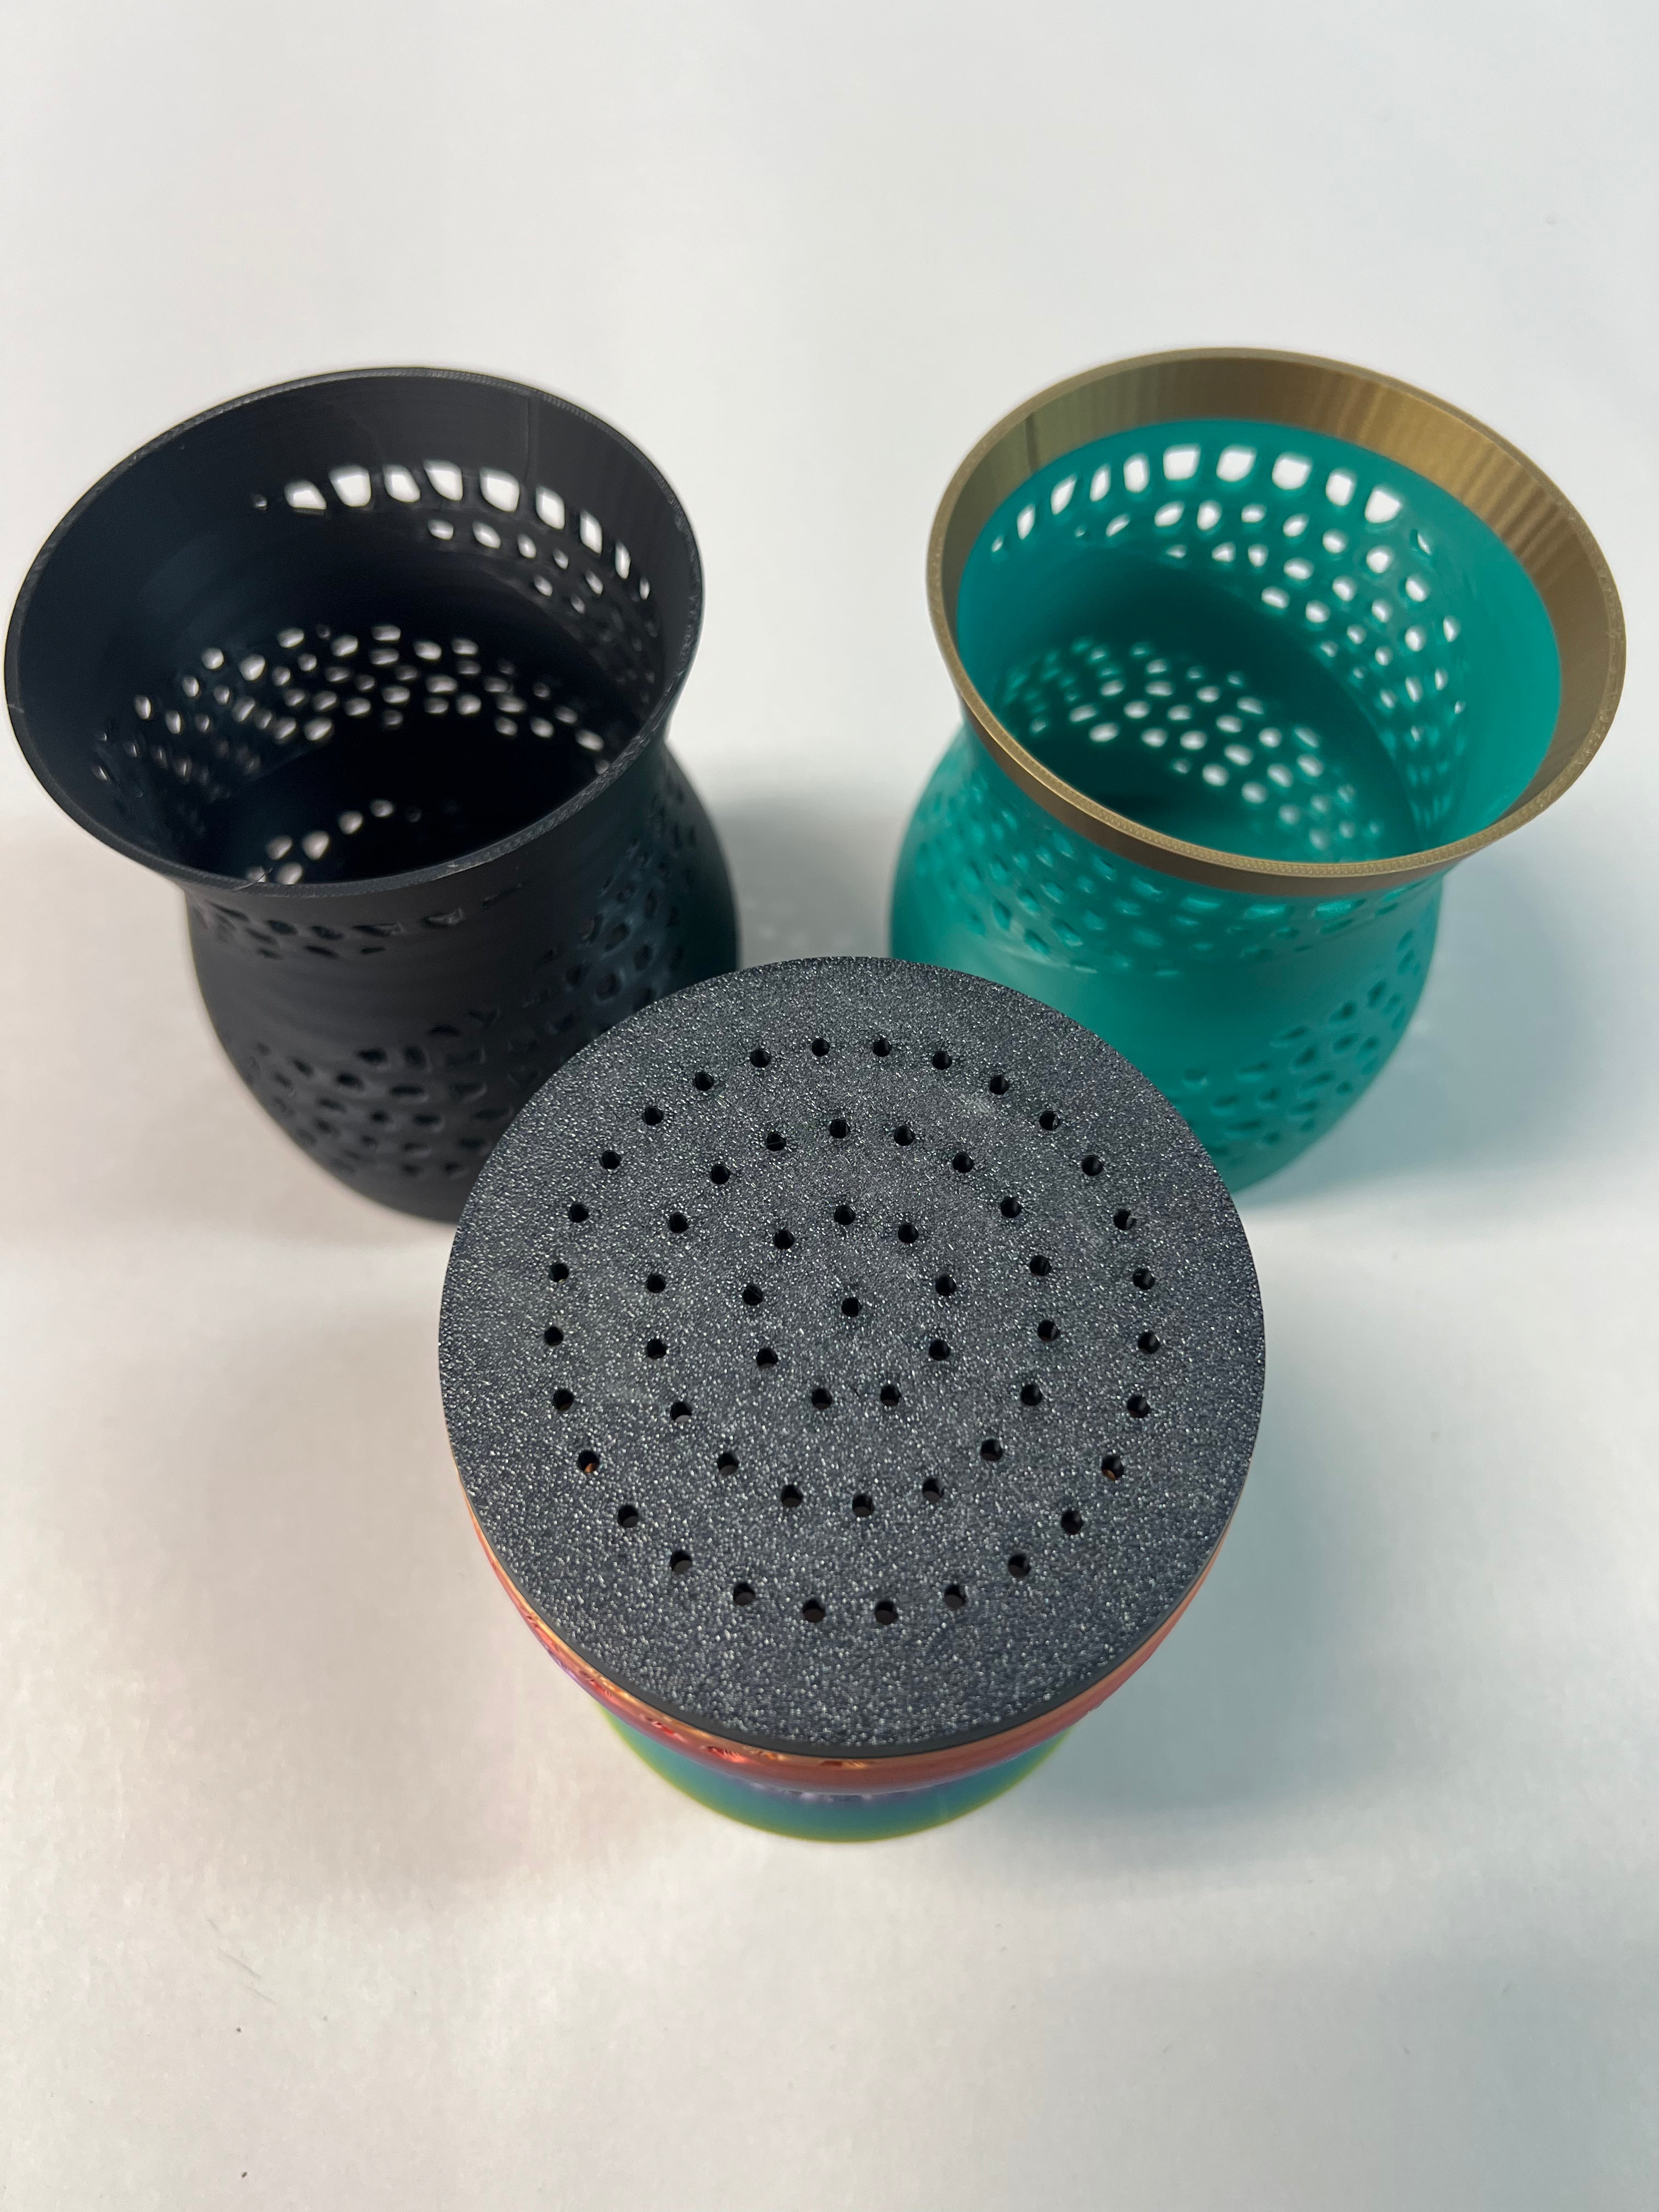 3D custom designed Orchid pots